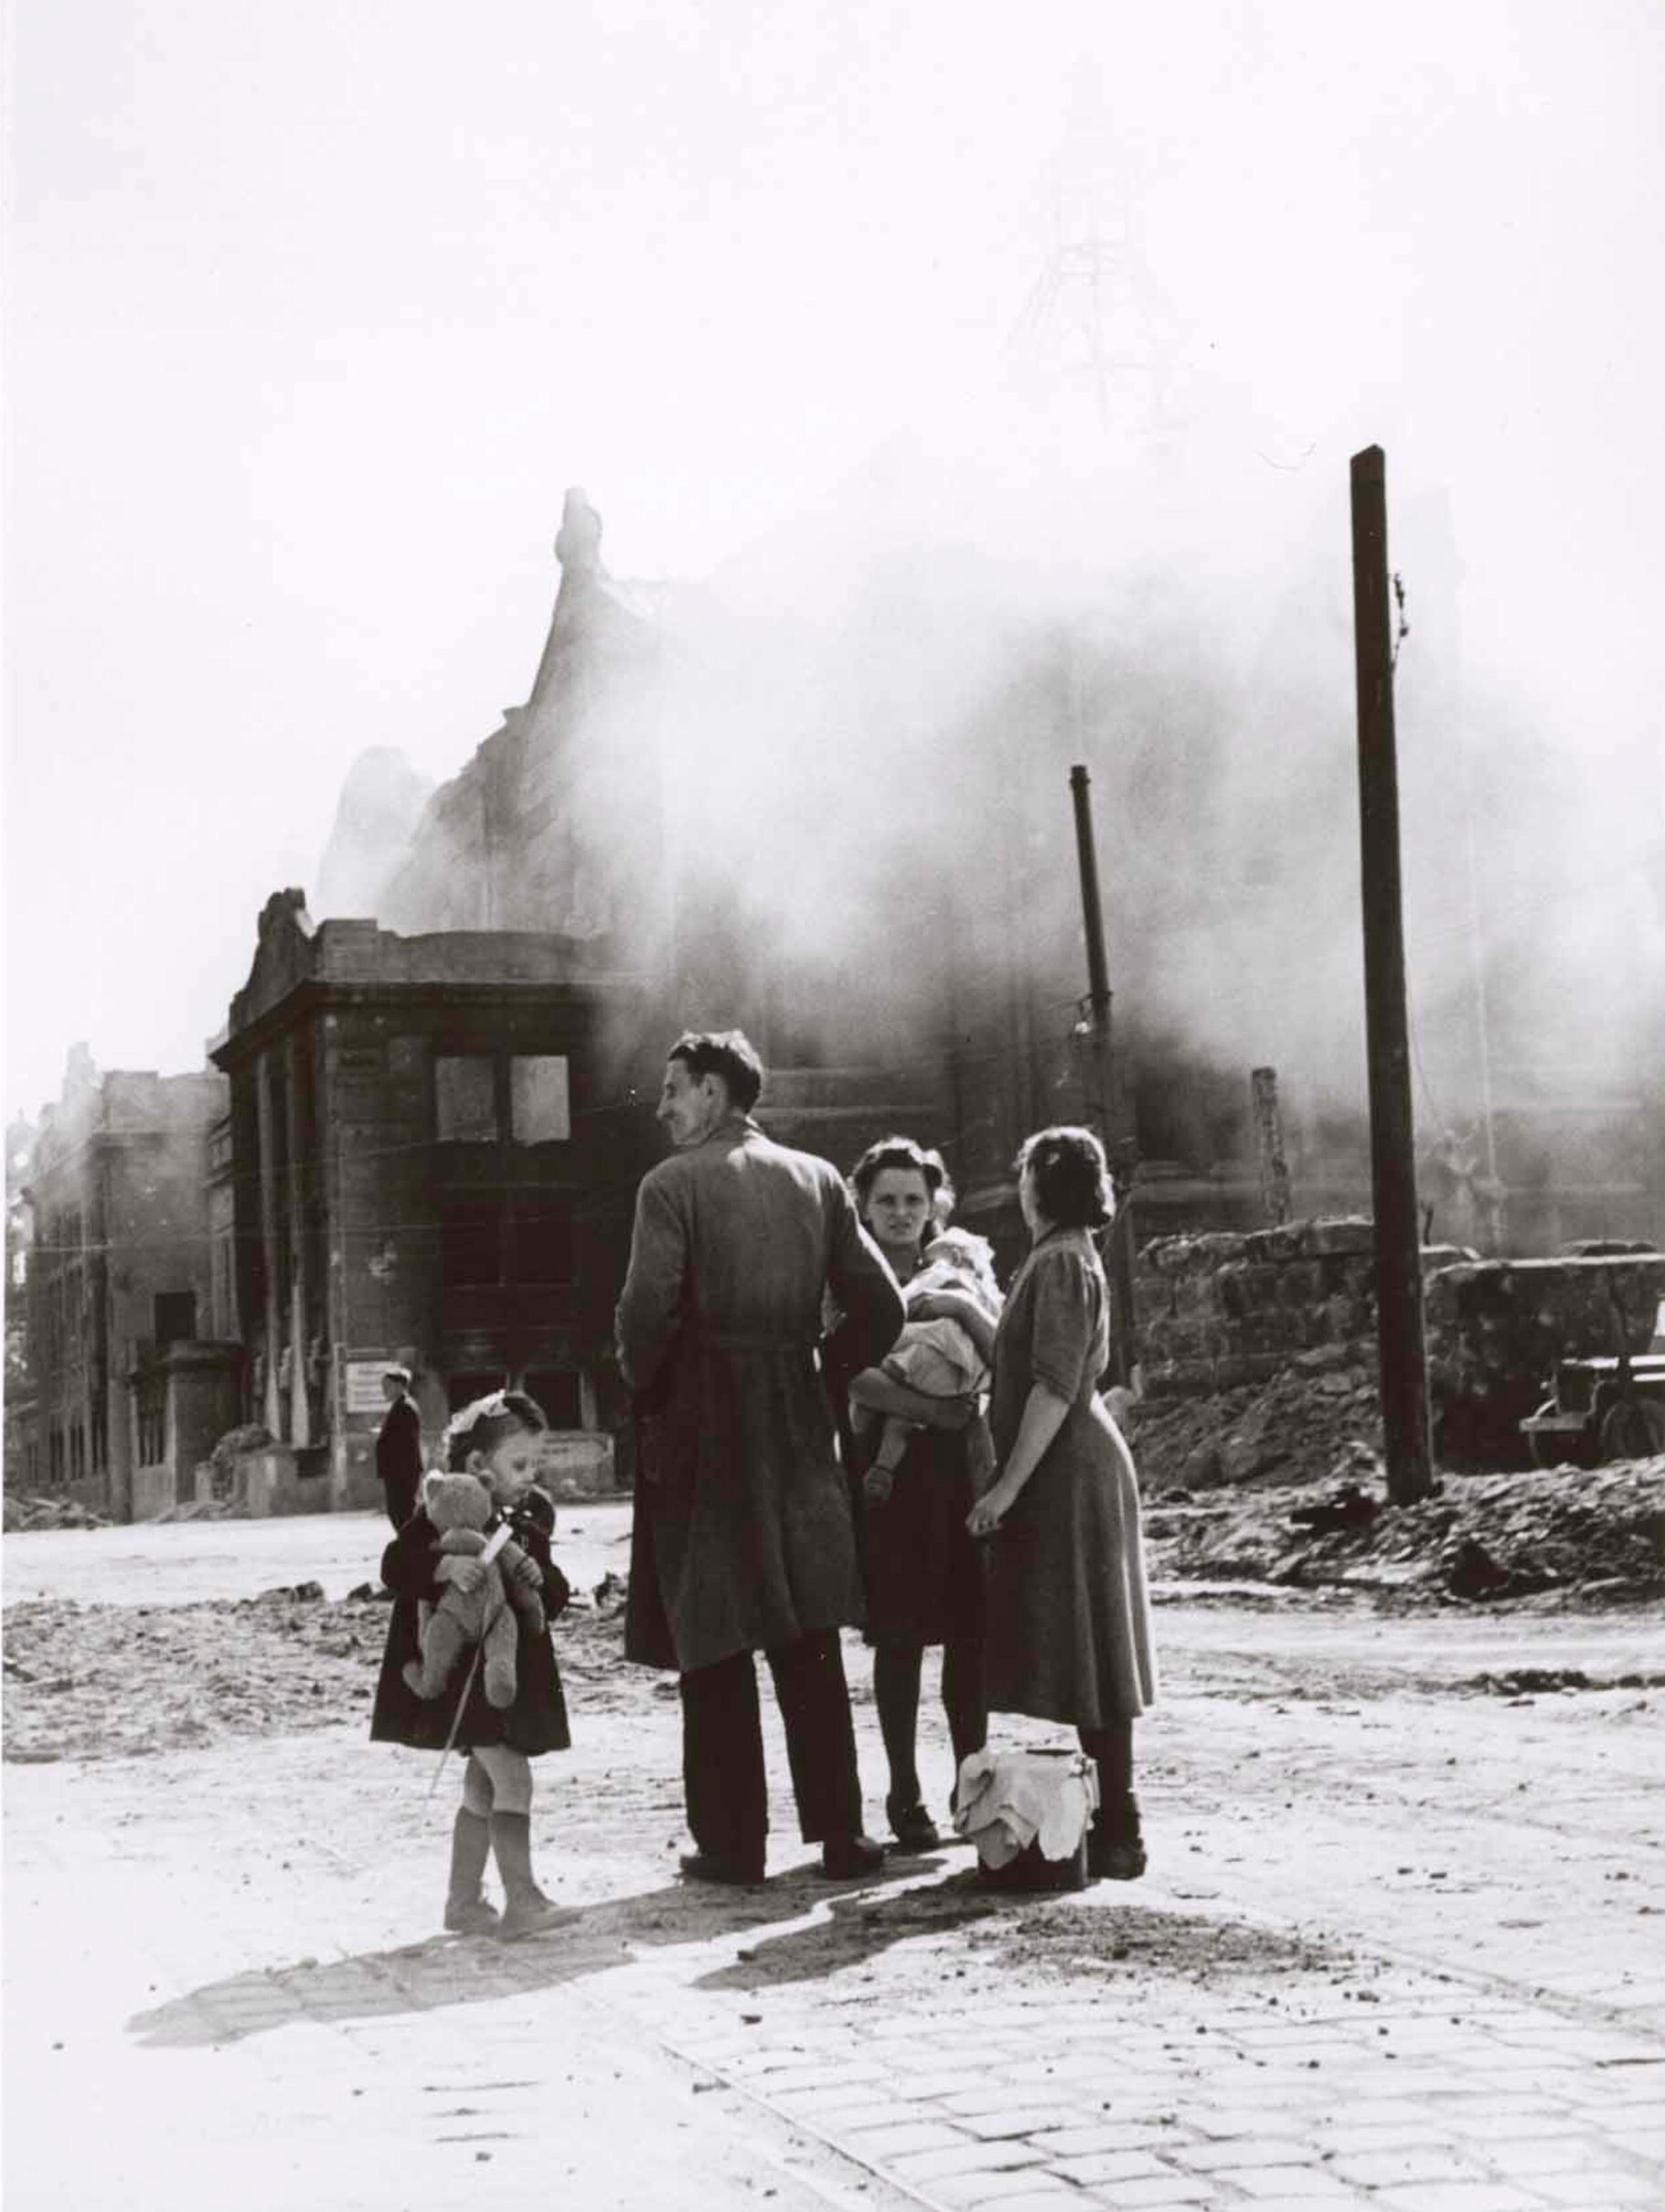 Семья перед разрушенными зданиями, Нюрнберг, 20 апреля 1945 года. Фотограф Роберт Капа